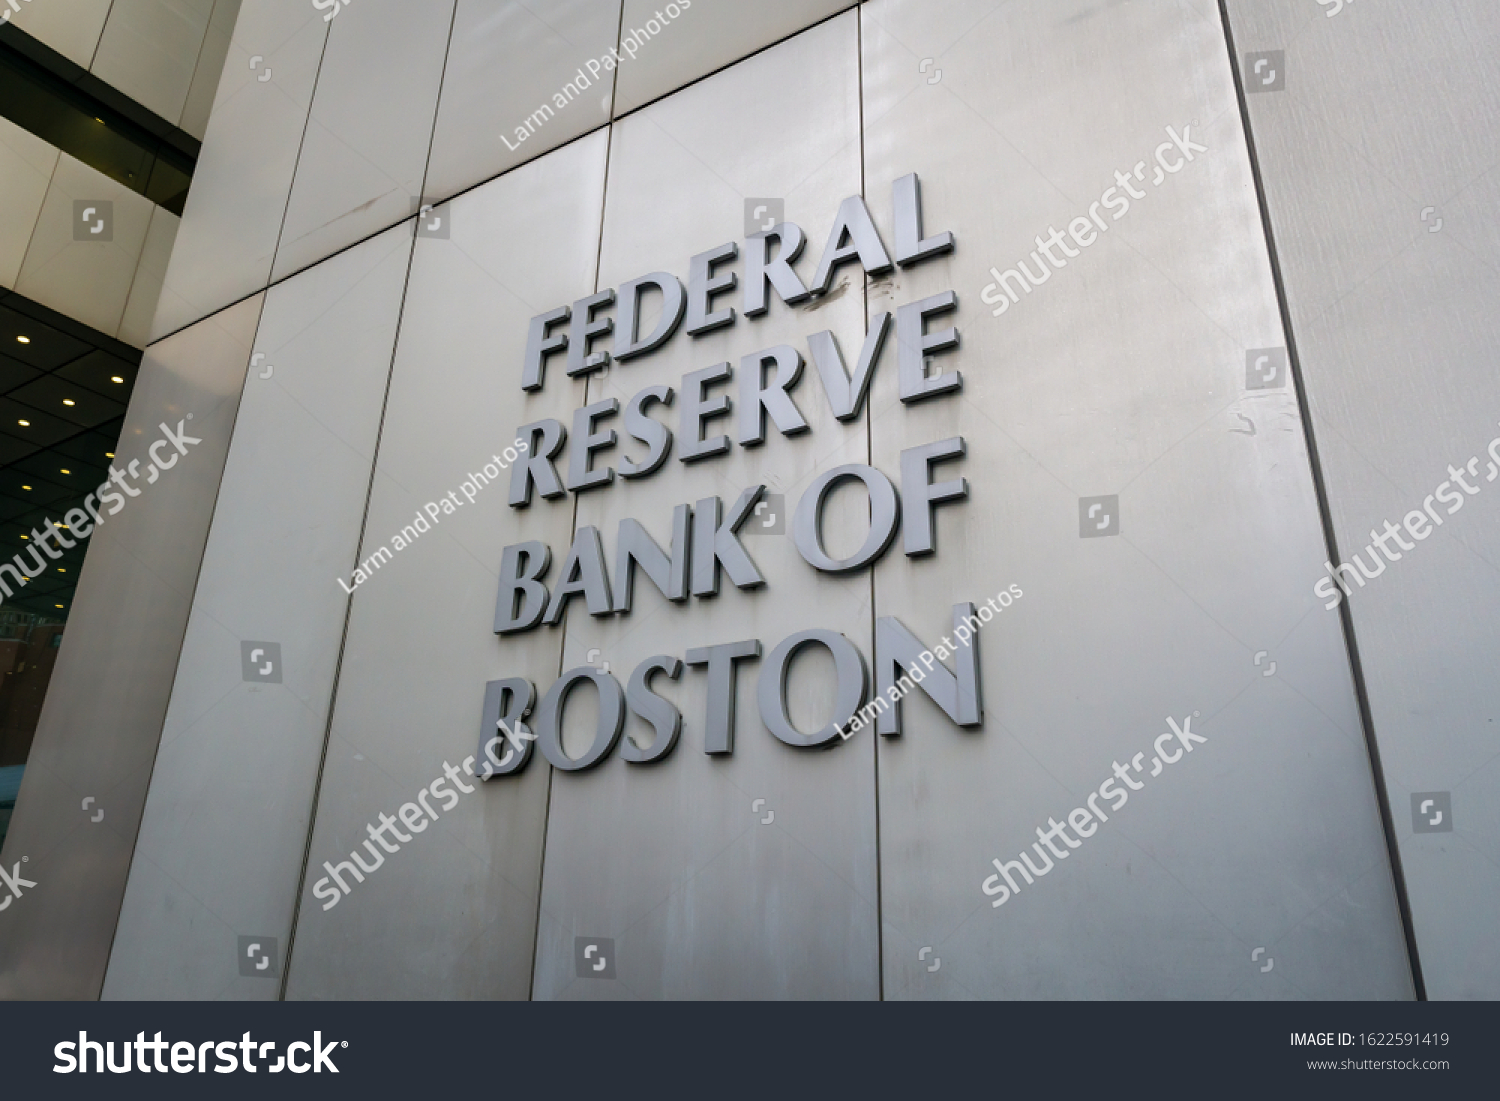 Государственный резервный банк. Федеральный резервный банк. Бостон банк. Бостонский резервный банк. Федеральный резервный банк Нью-Йорка.